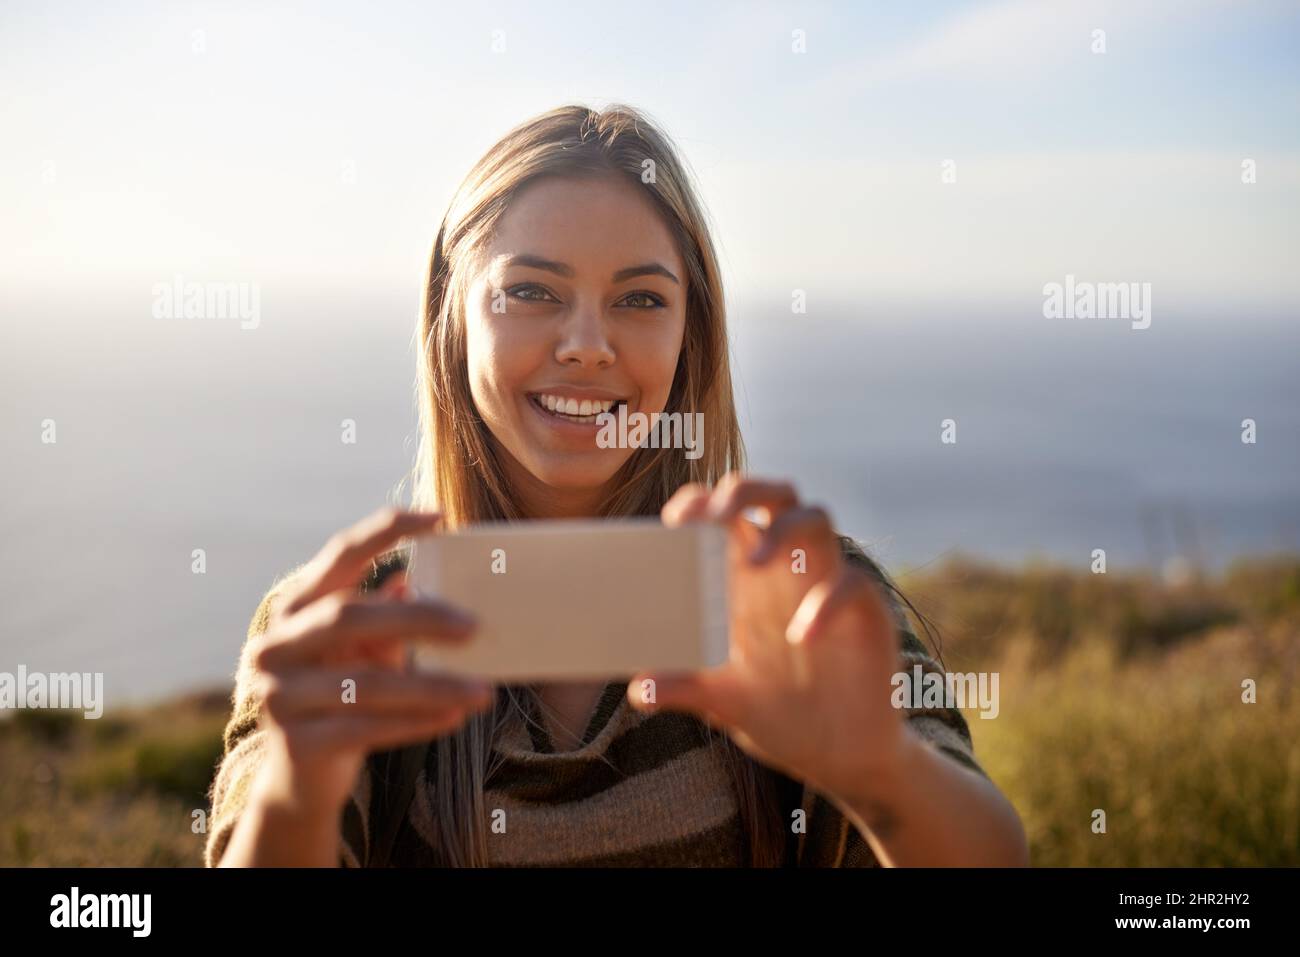 Un momento che vale la pena ricordare. Ritratto di una giovane donna attraente che tiene il suo cellulare per scattare una foto all'aperto. Foto Stock